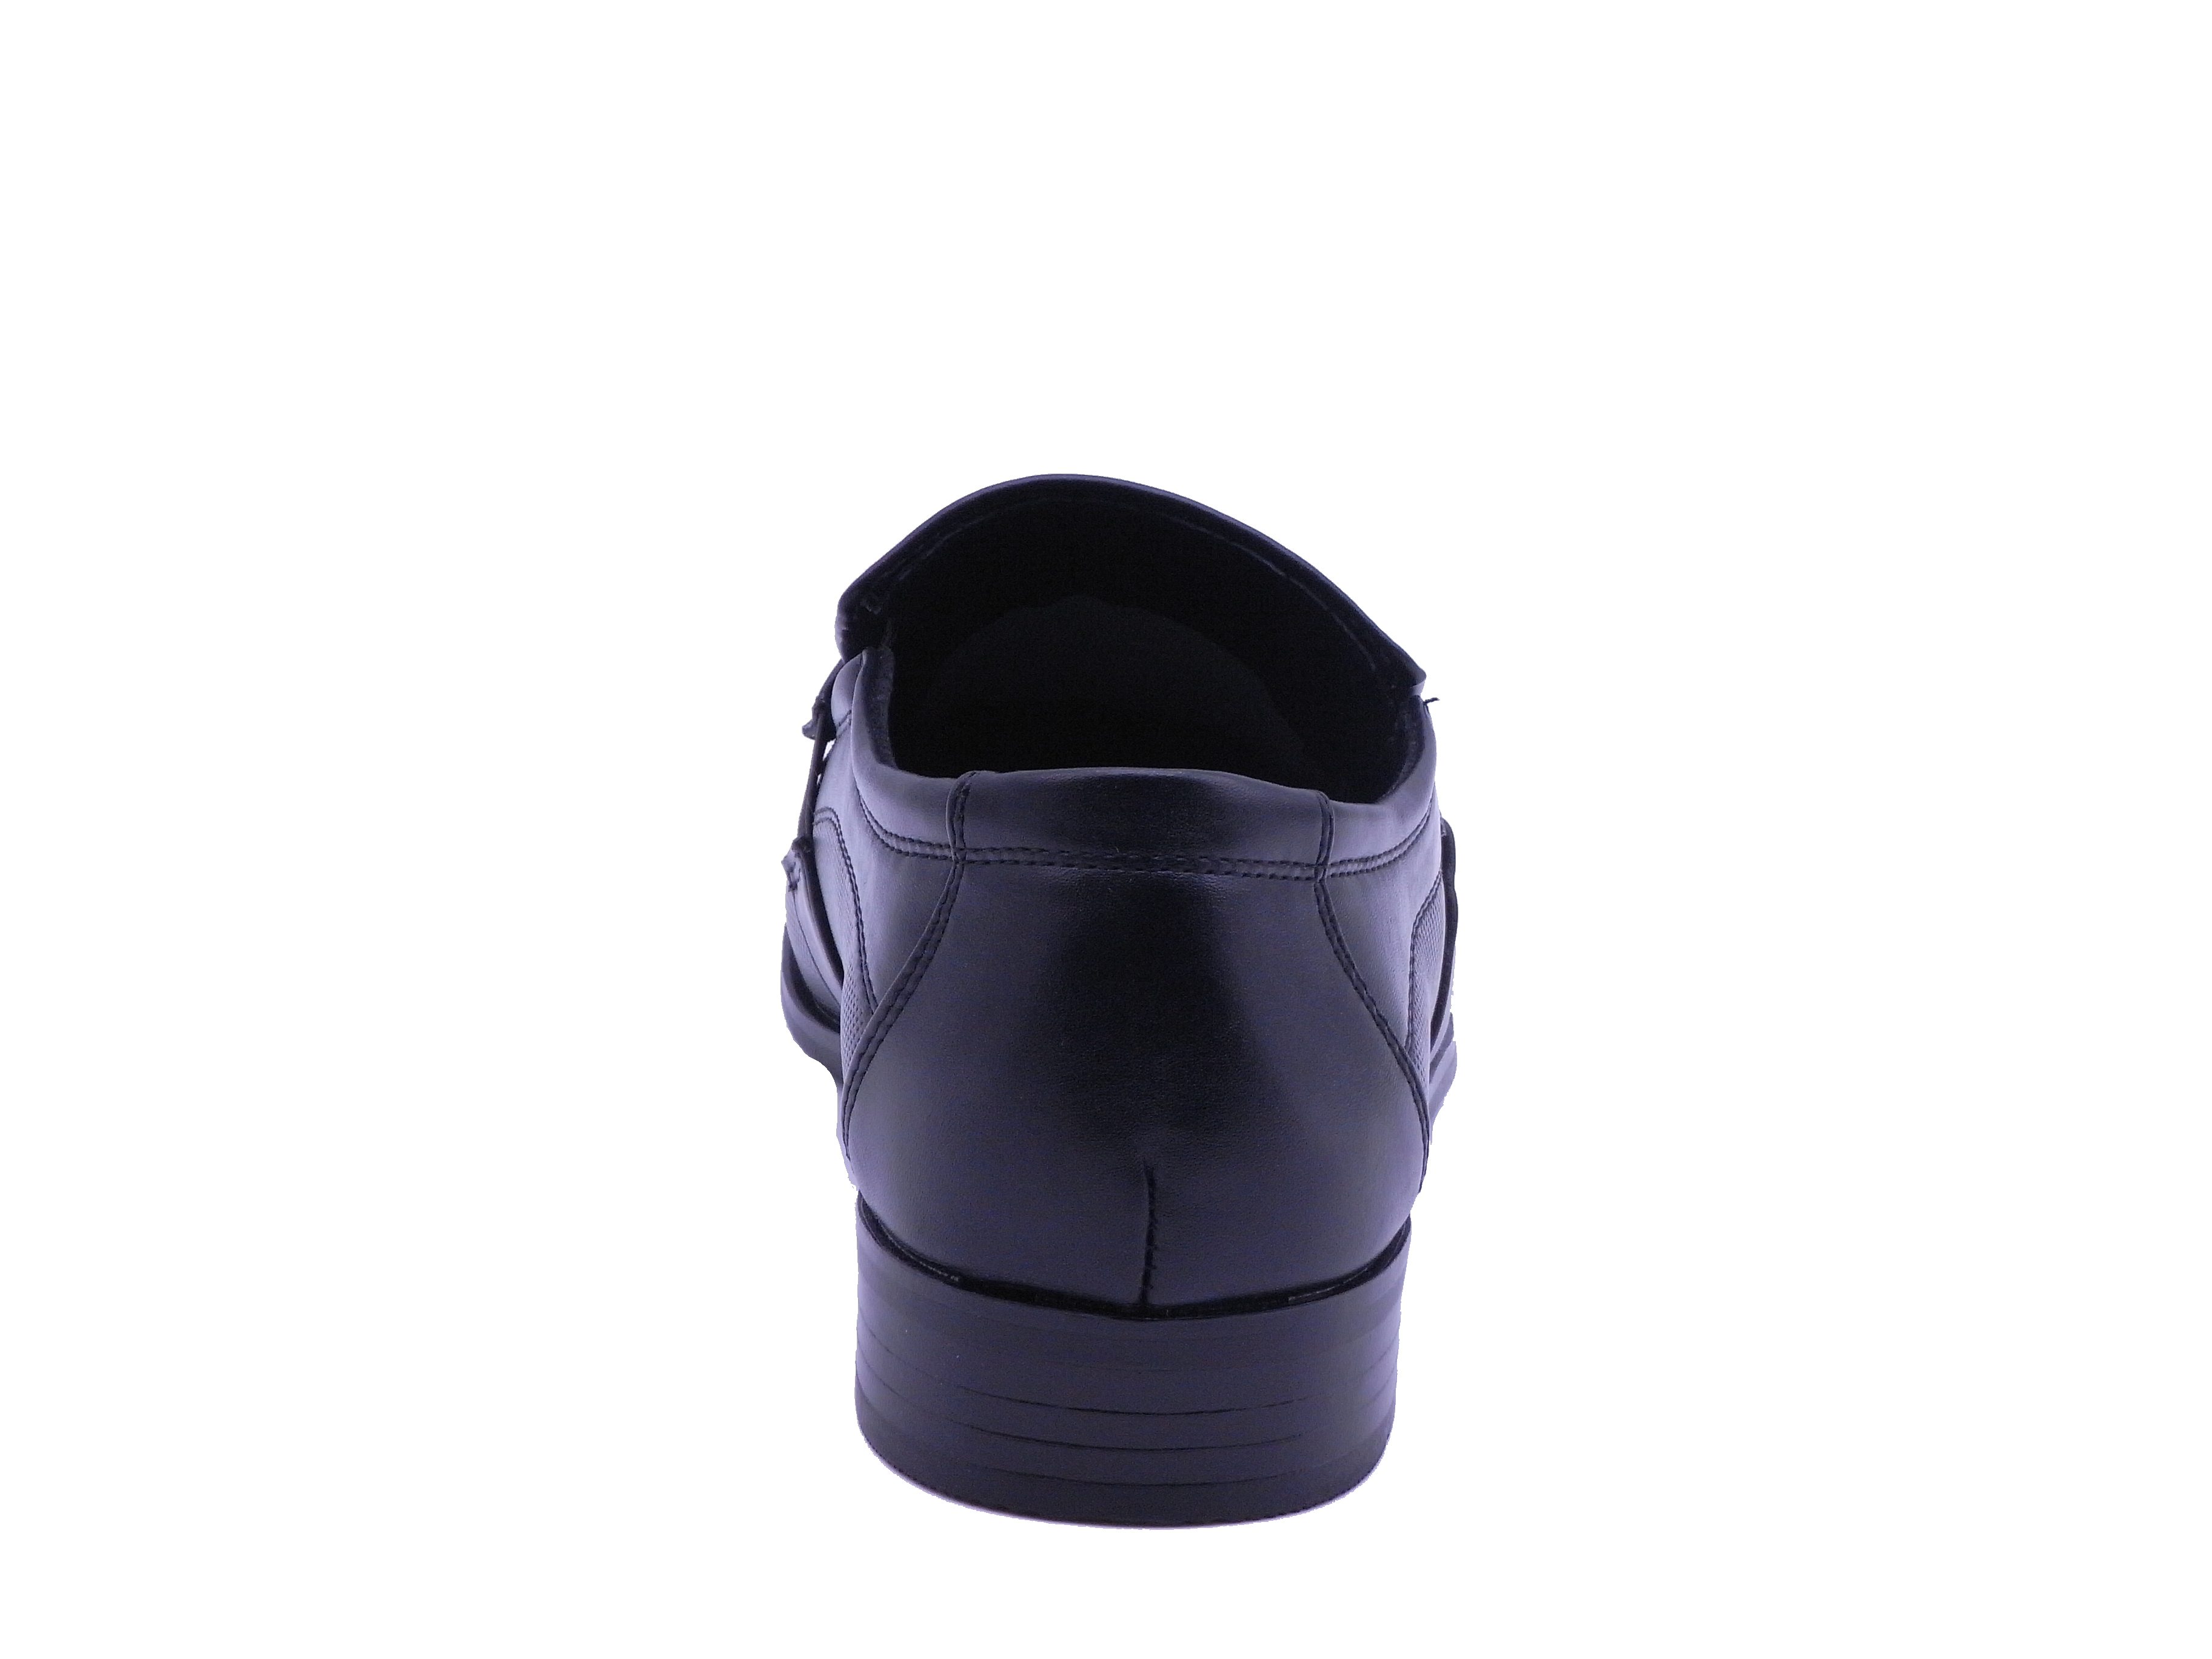 Men Shoes Slip On Strap Loafer Black Color Size US8.5 - image 4 of 5